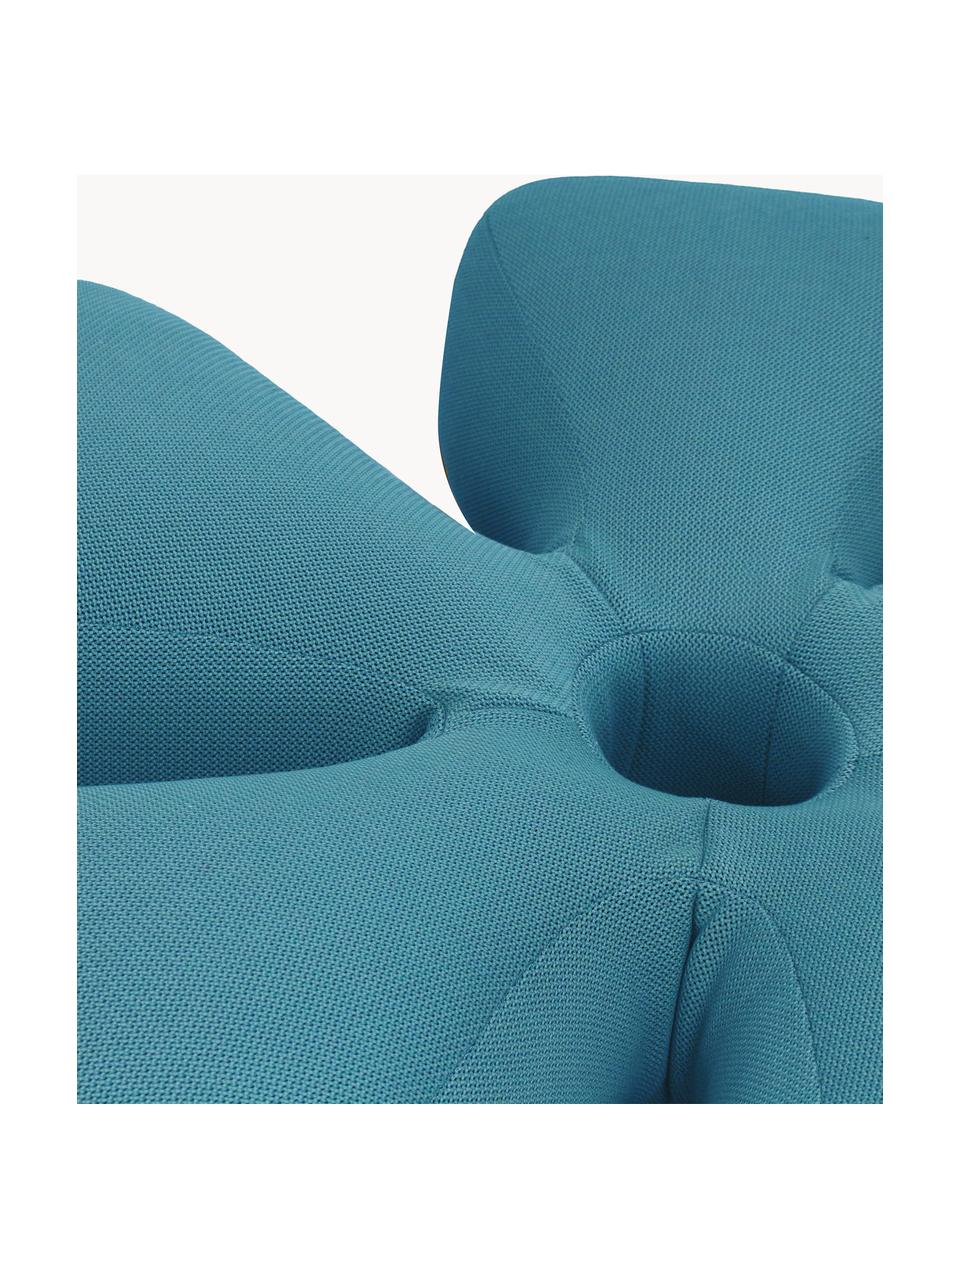 Ręcznie wykonany zewnętrzny worek do siedzenia Flower, Tapicerka: 70% PAN + 30% PES, wodood, Petrol, Ø 110 x W 25 cm